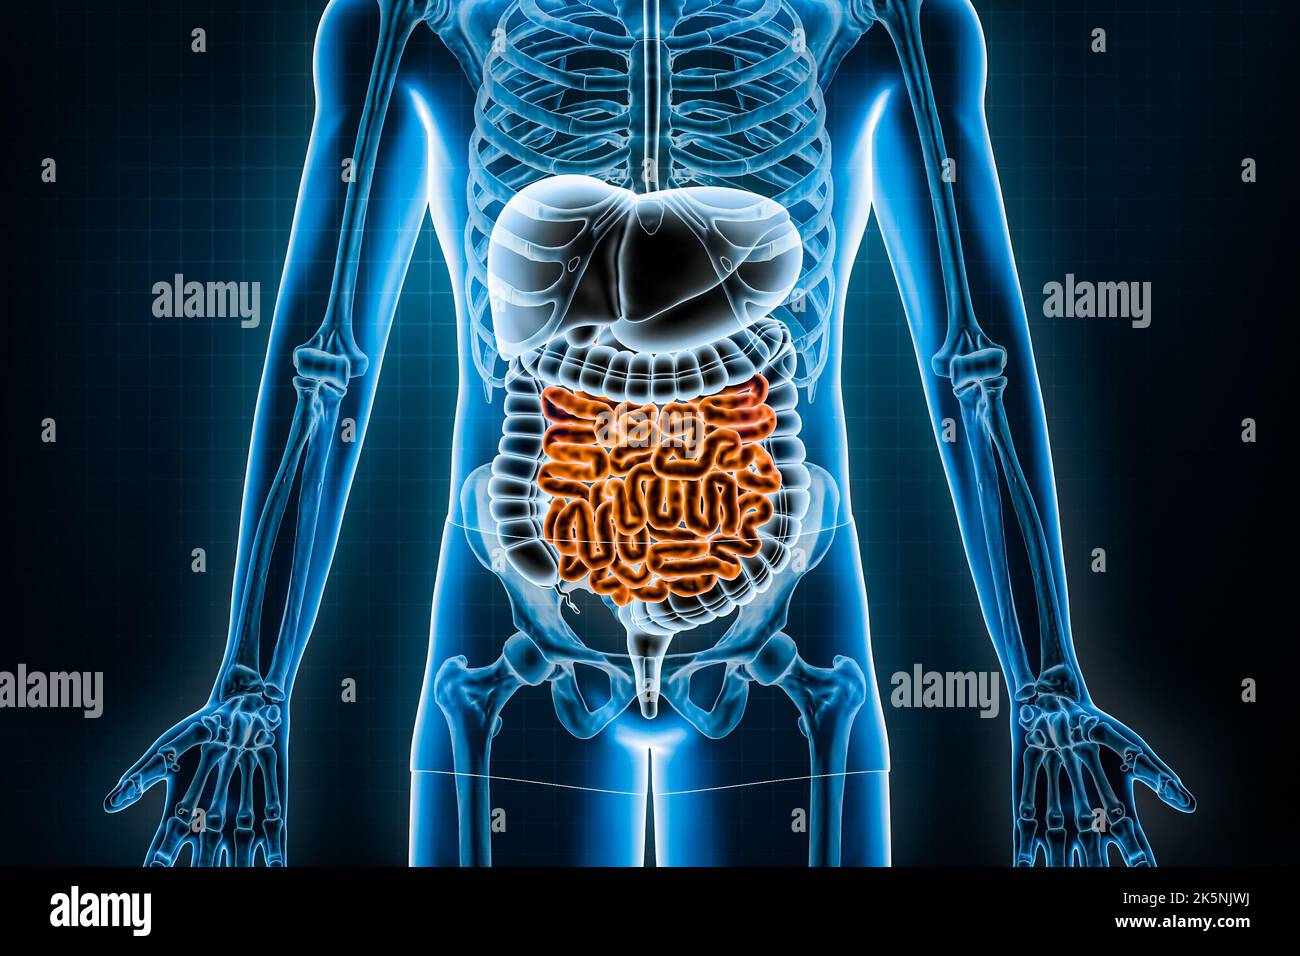 Illustrazione del sistema digestivo umano e del tratto gastrointestinale 3D. Vista anteriore o anteriore dell'intestino tenue o intestinale. Anatomia, medicina, bio Foto Stock